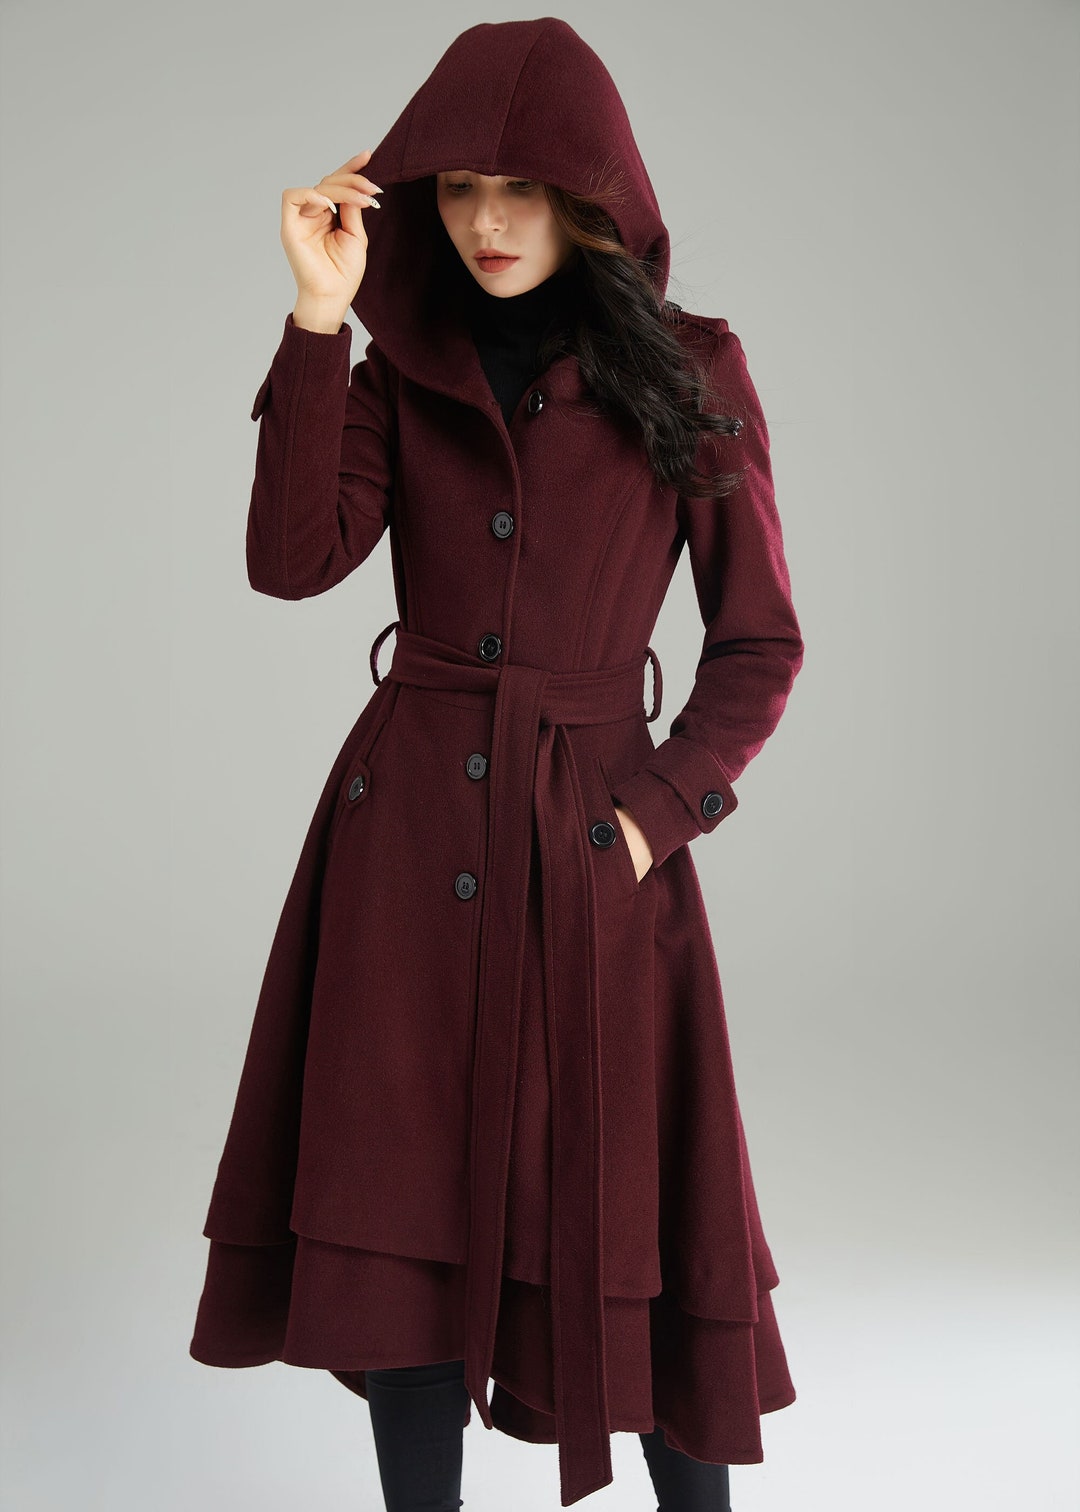 Wool Coat, Wool Coat Women, Hooded Wool Coat, Asymmetrical Wool Coat ...